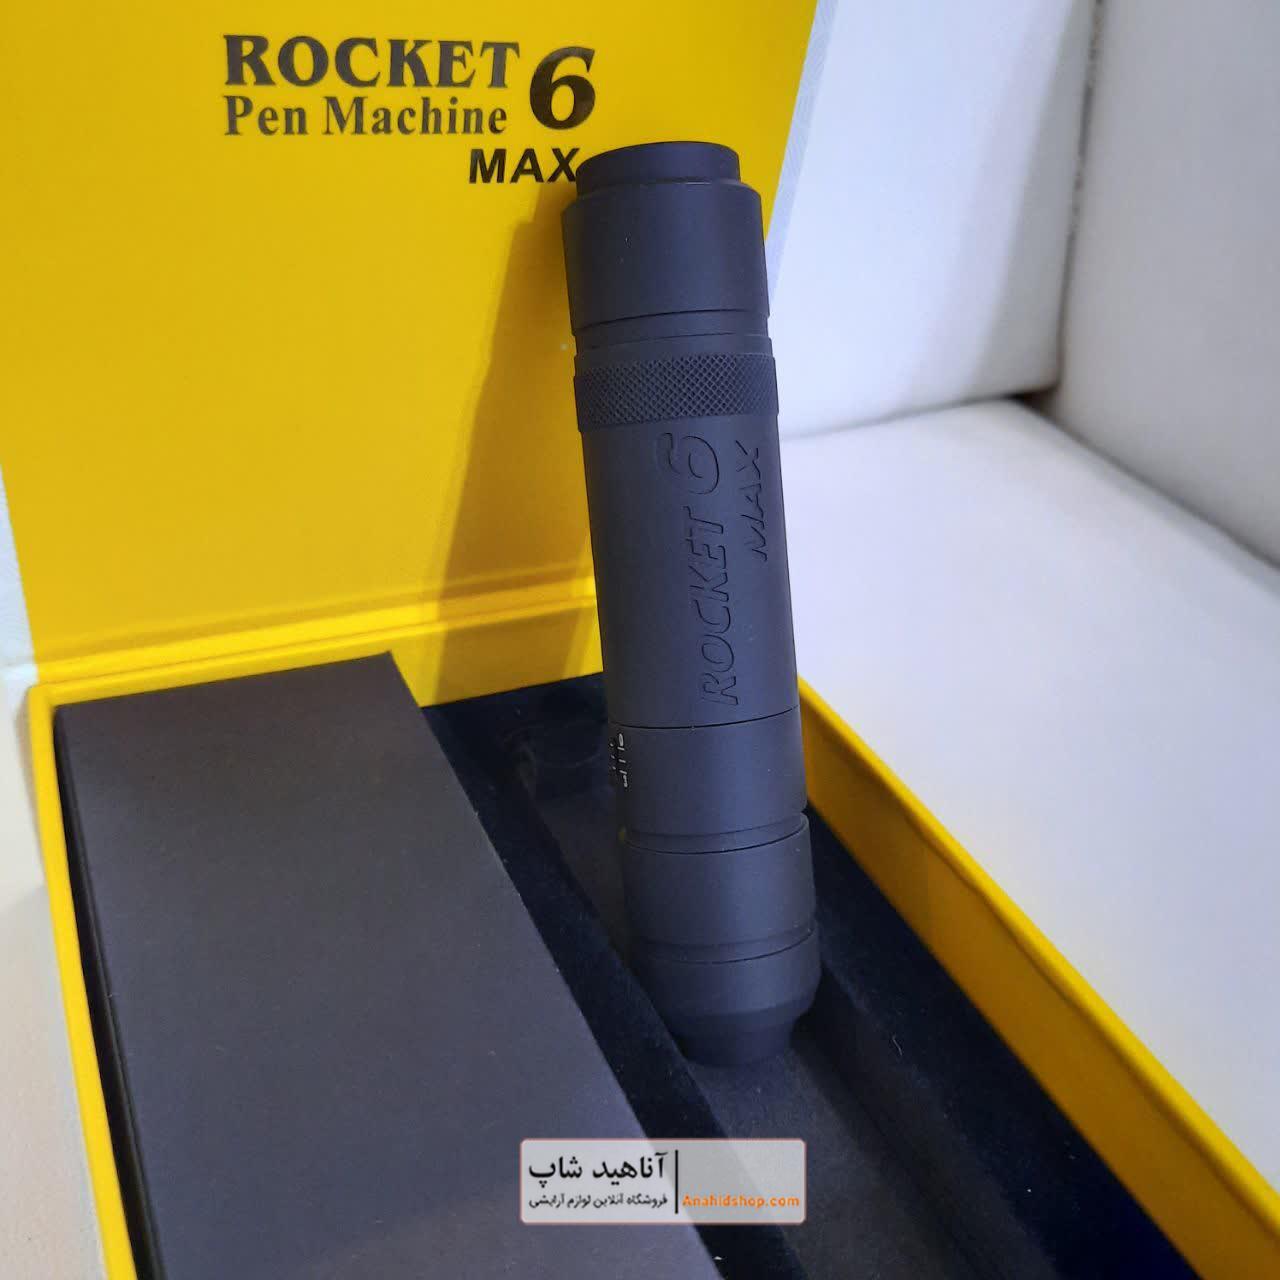 دستگاه  تاتو پن راکت 6 مکس